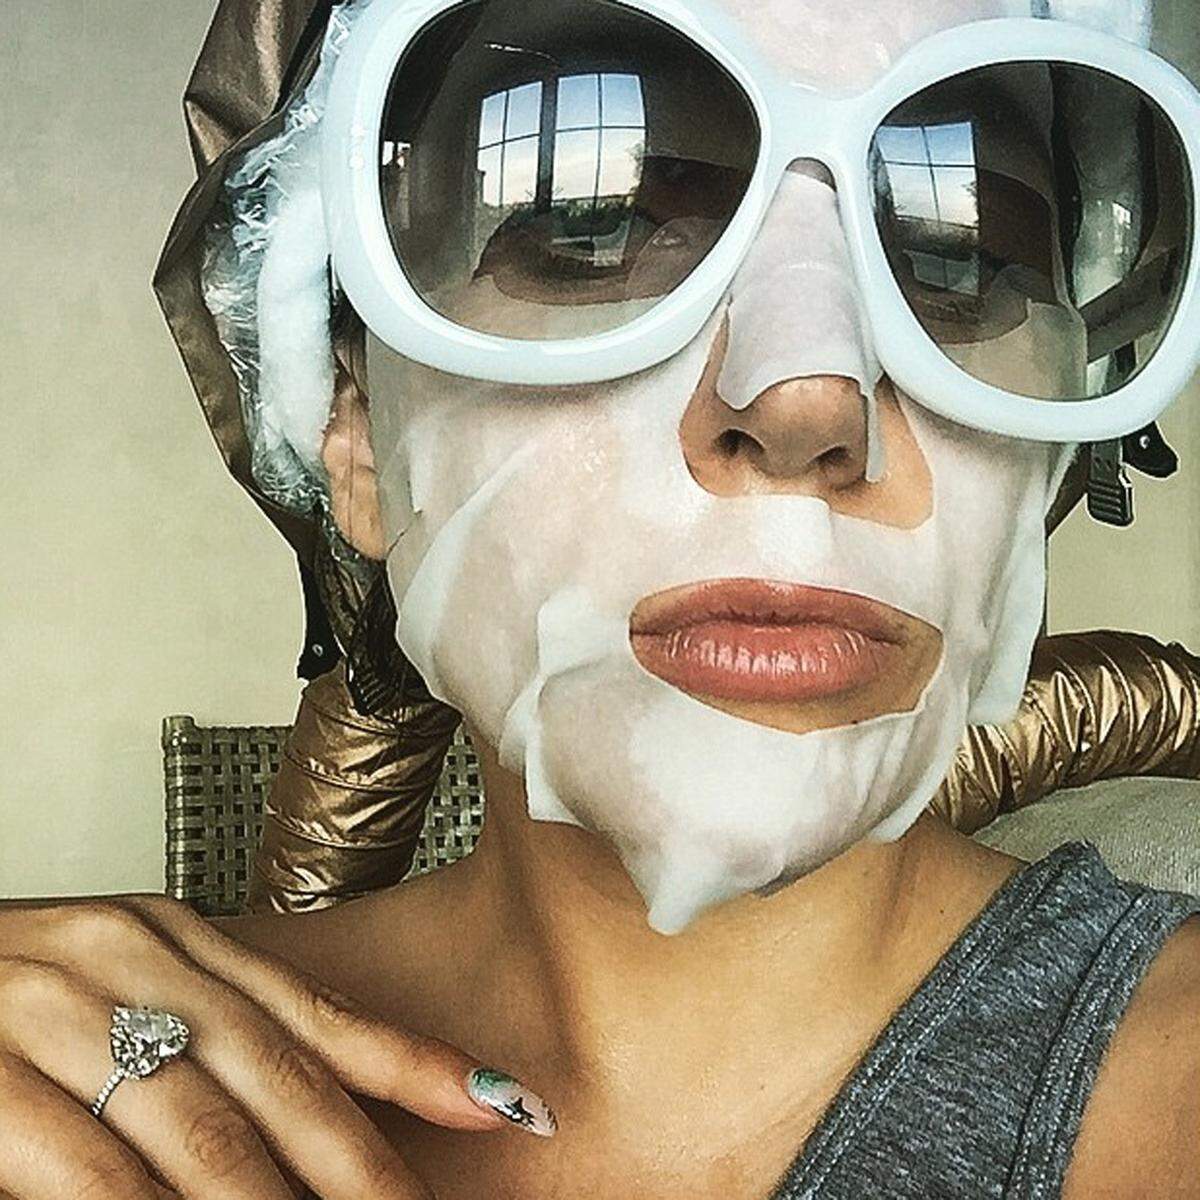 Zu viel Sonne trocknet die Haut aus, eine Feuchtigkeitsmaske hilft dem entgegenzuwirken. Lady Gaga inszeniert sich mit Sonnenbrille.